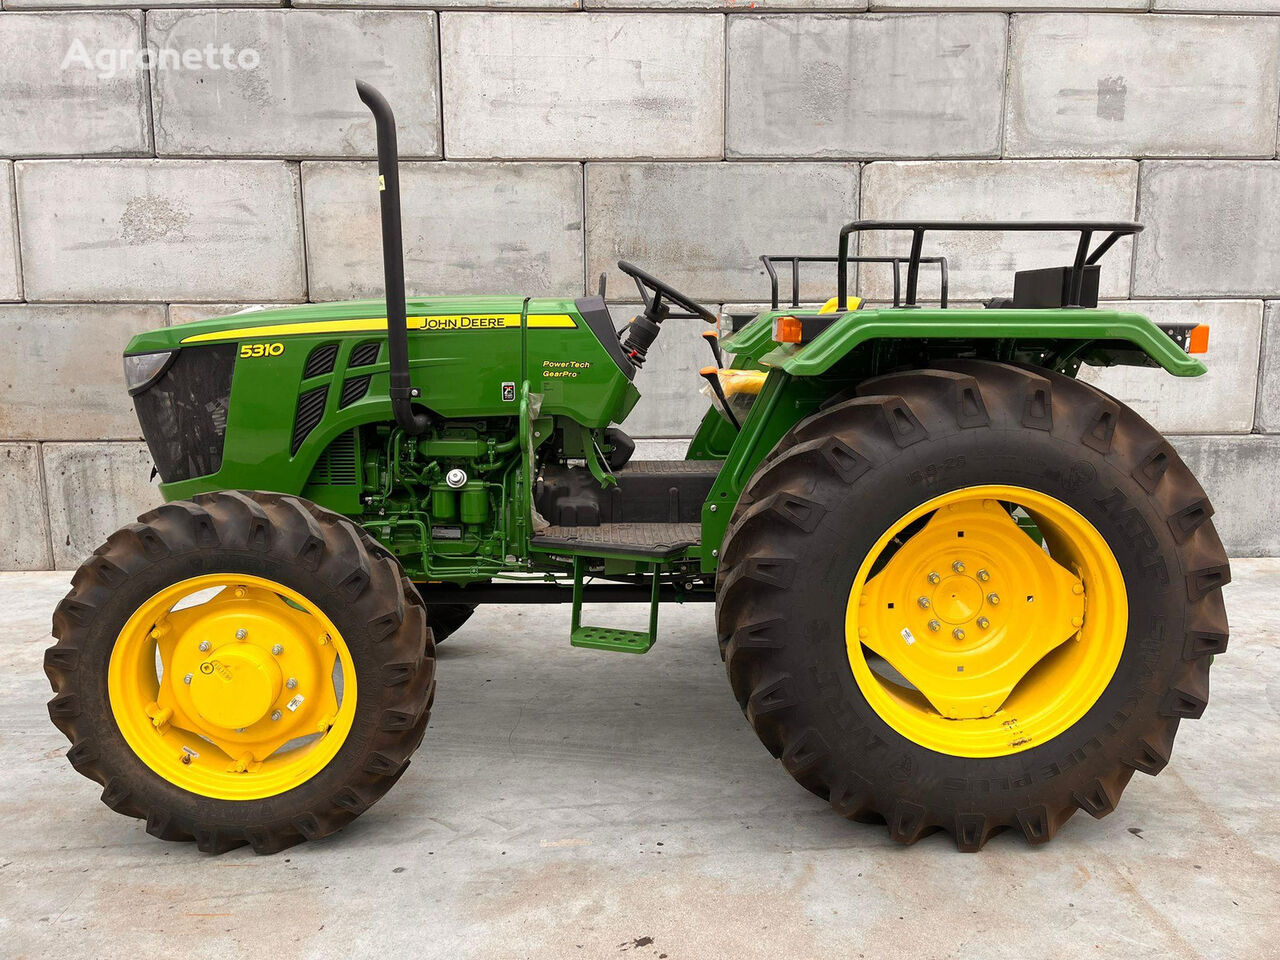 new John Deere 5310 UNUSED, NO CE, ONLY FOR EXPORT! wheel tractor